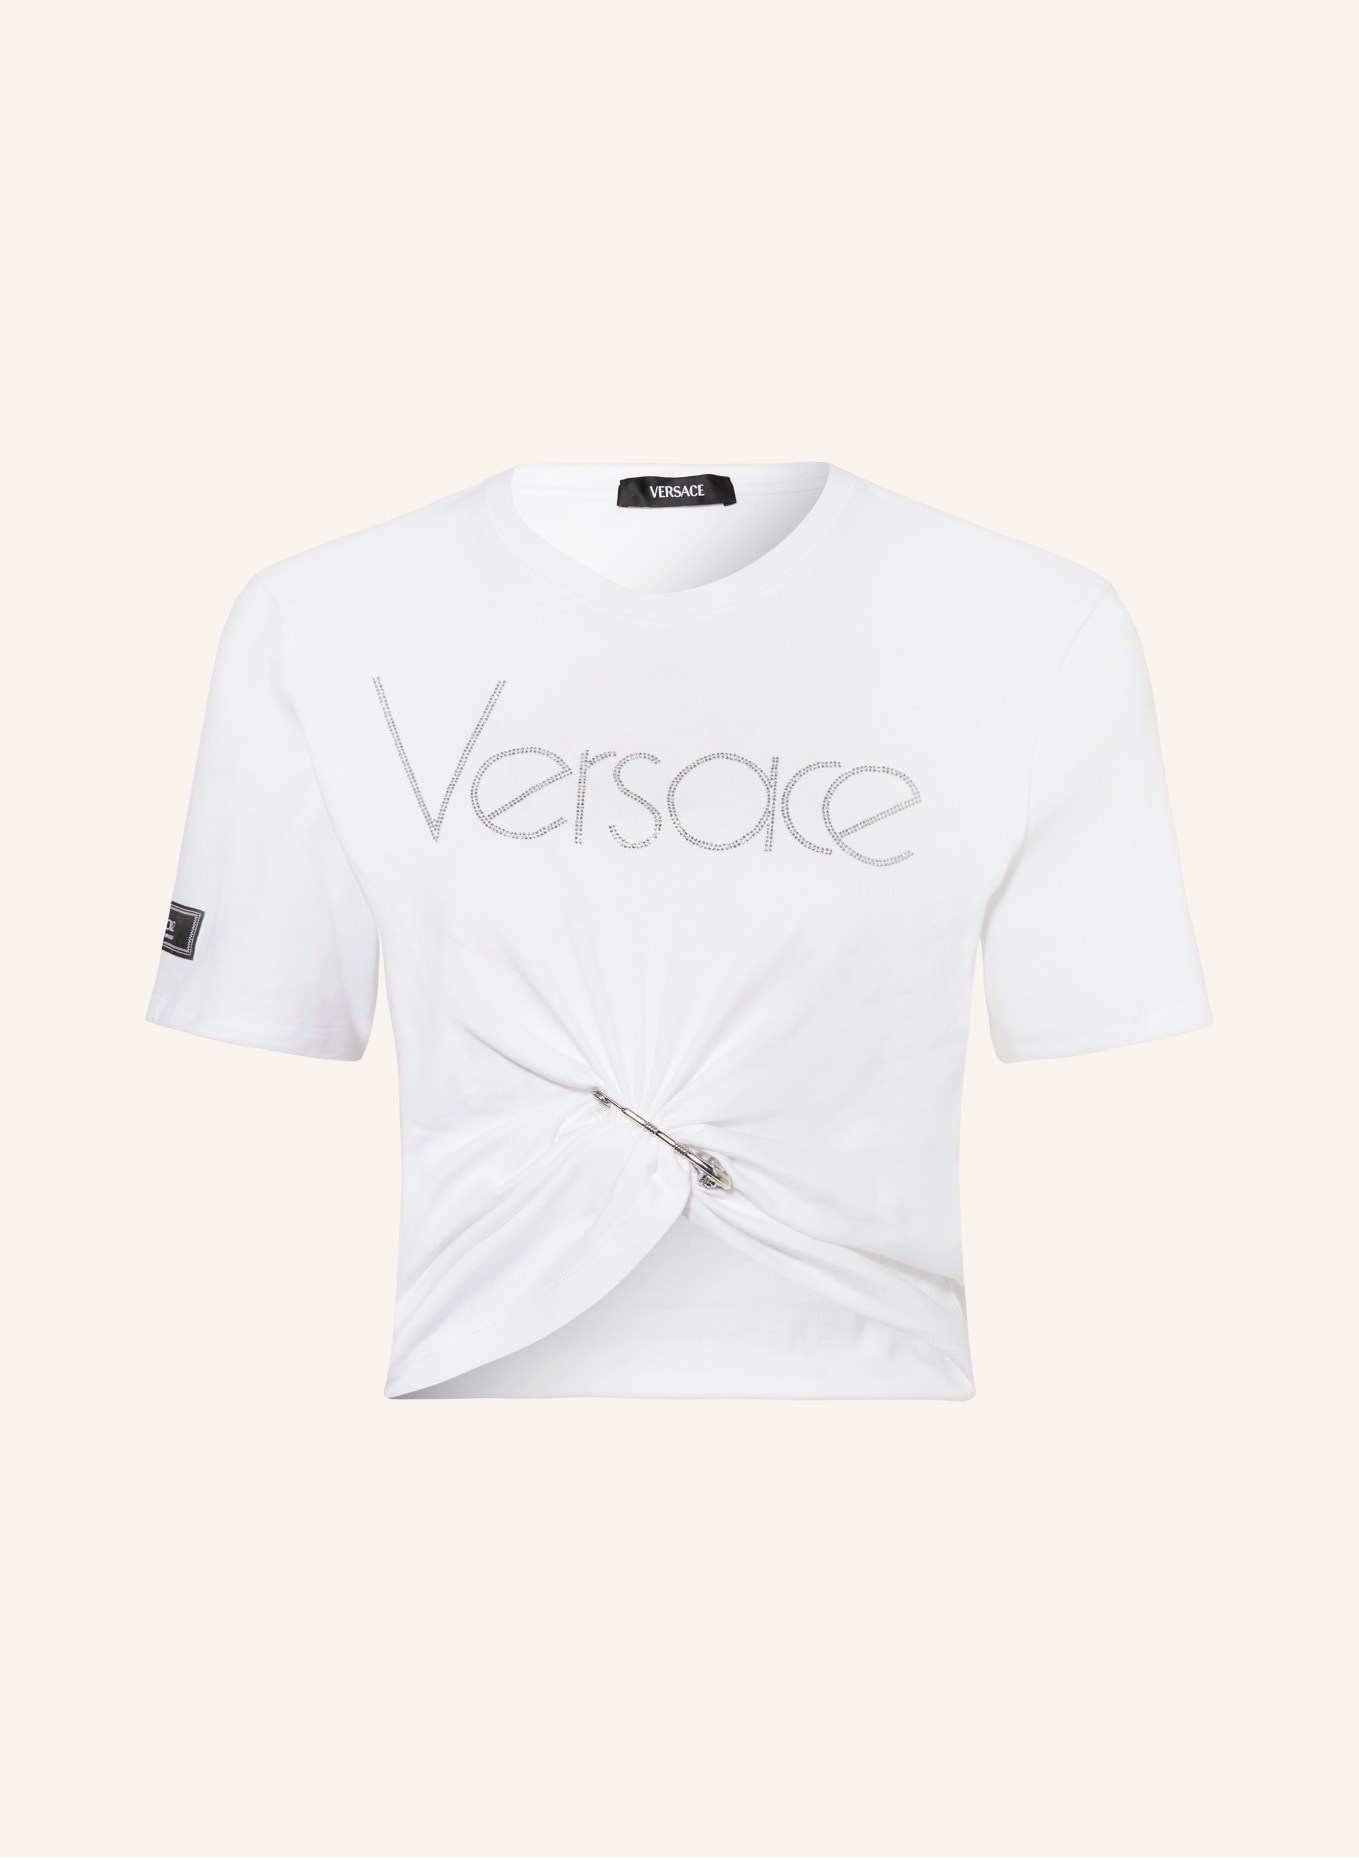 VERSACE T-Shirt mit Schmucksteinen, Farbe: WEISS (Bild 1)